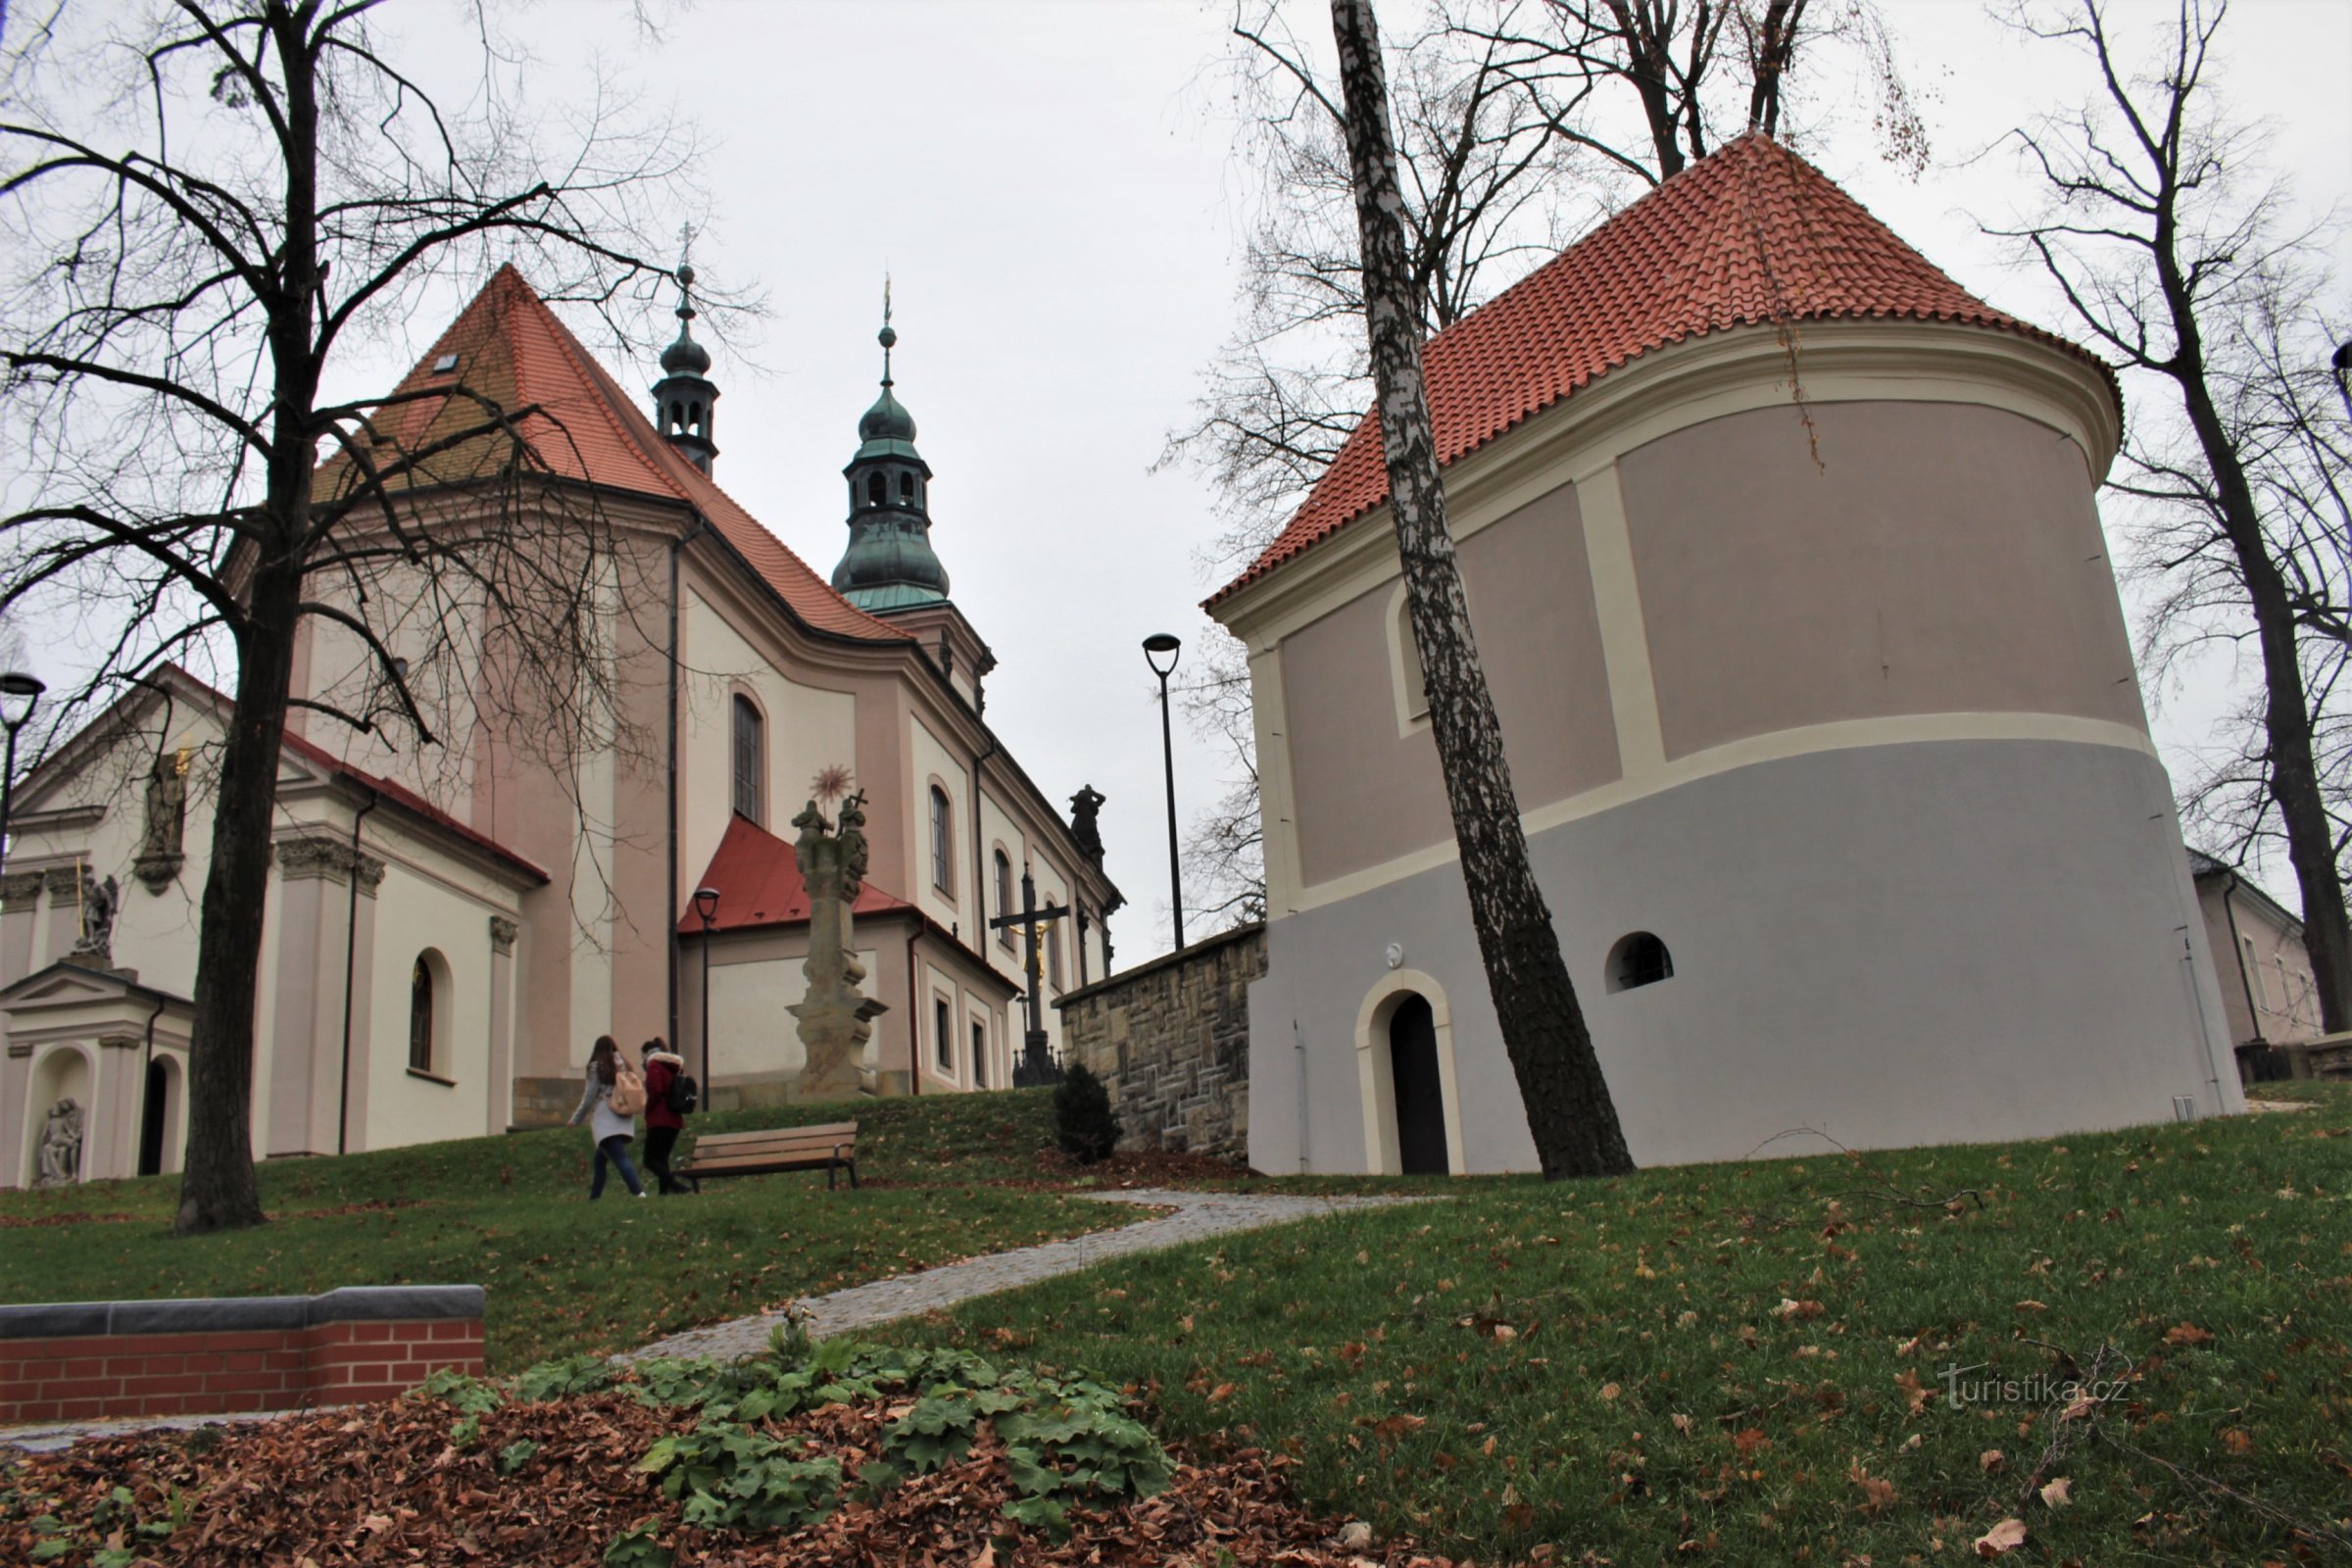 Ústí nad Orlicí - park by the church